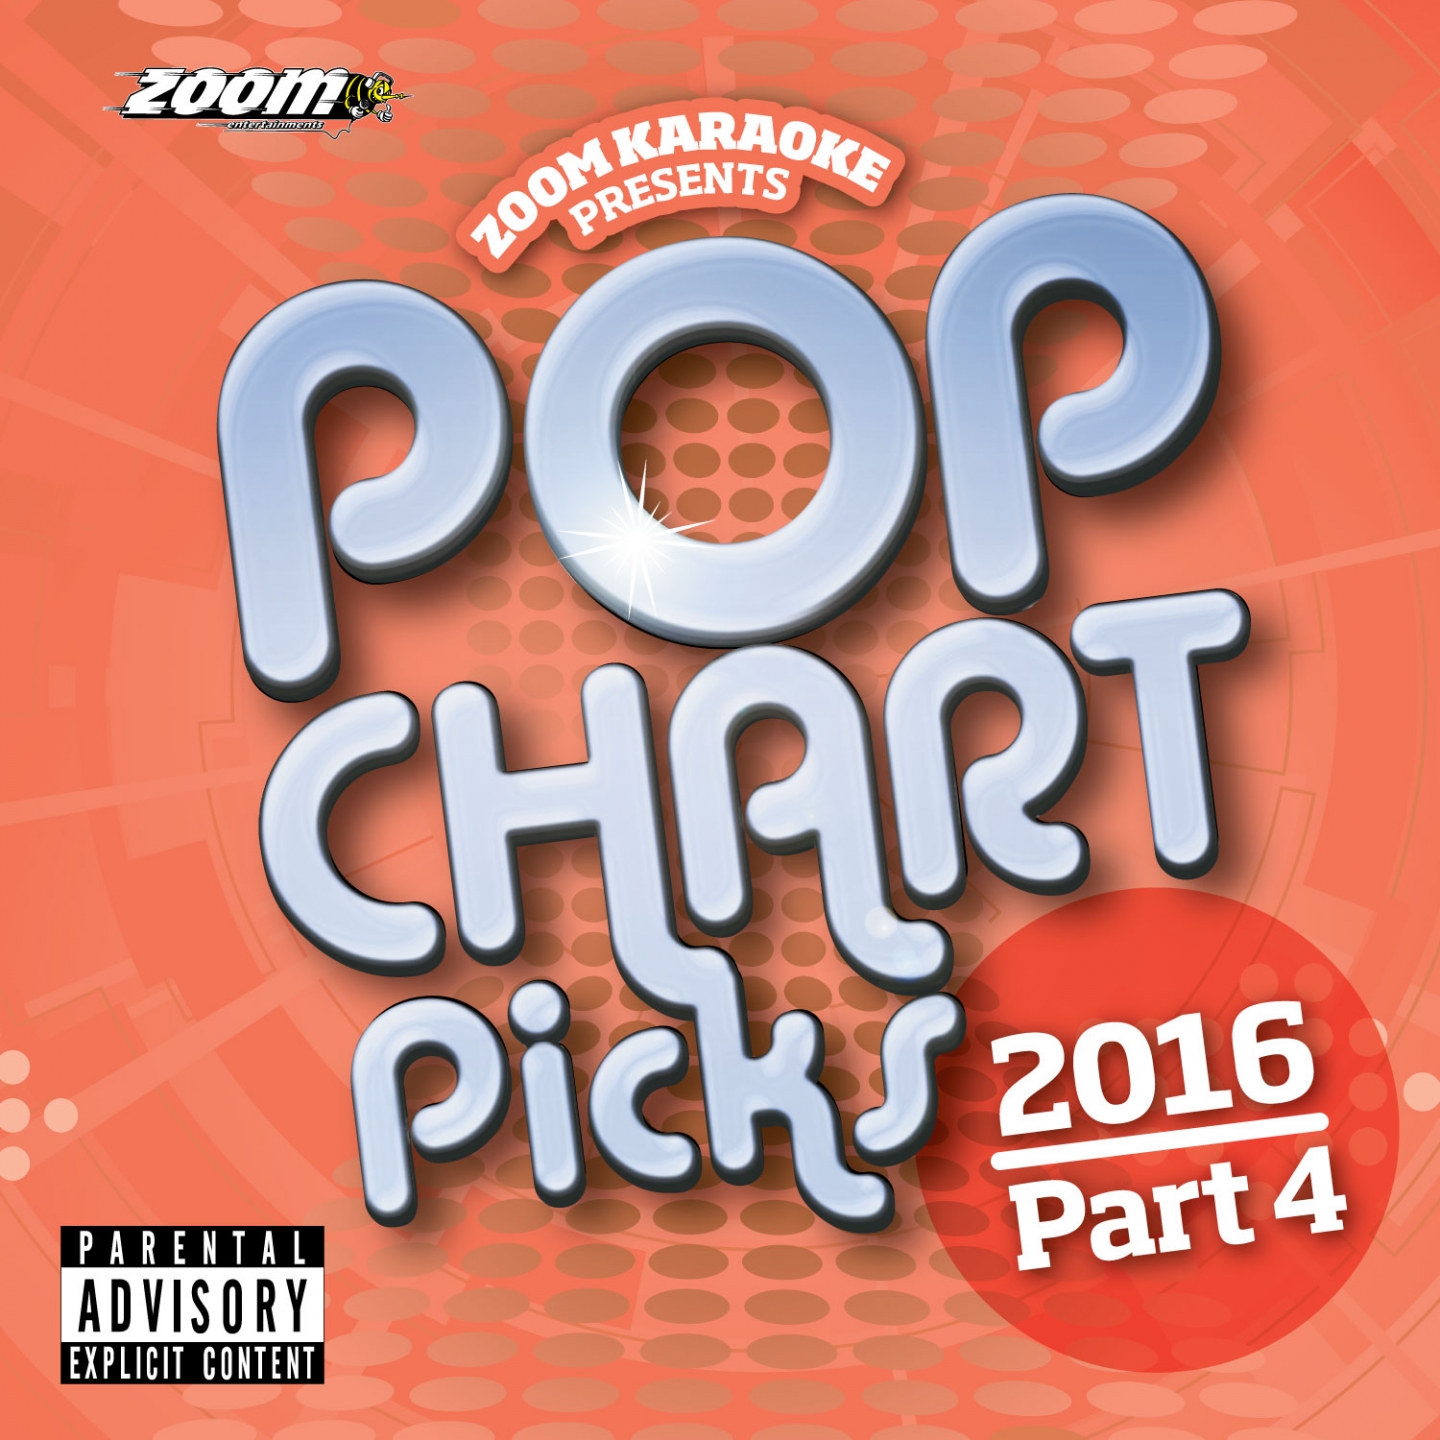 Zoom Karaoke Pop Chart Picks 2016 - Part 4